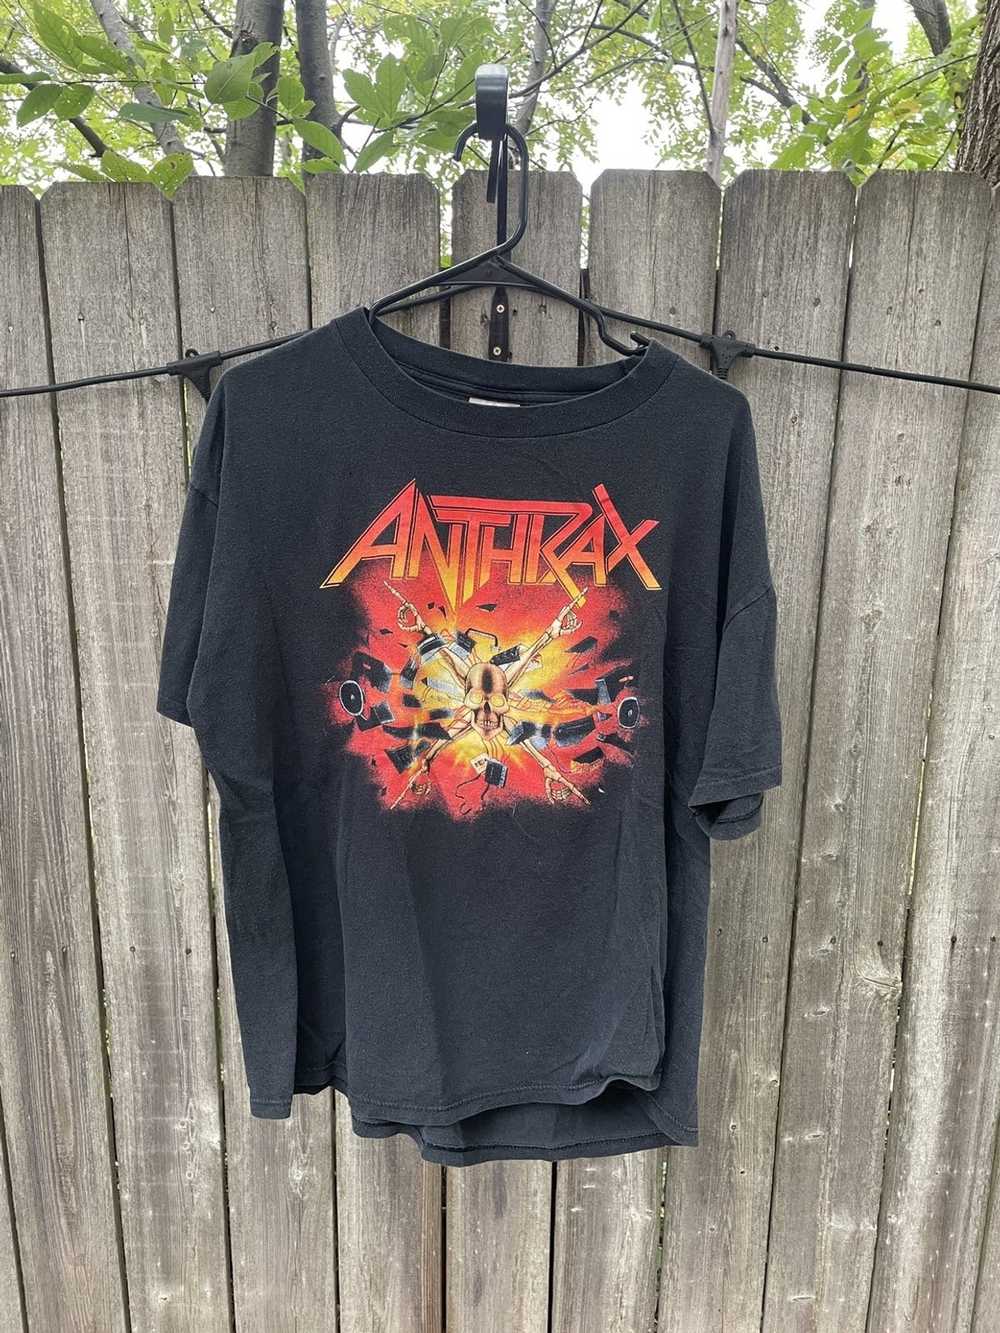 Anthrax killer b - Gem